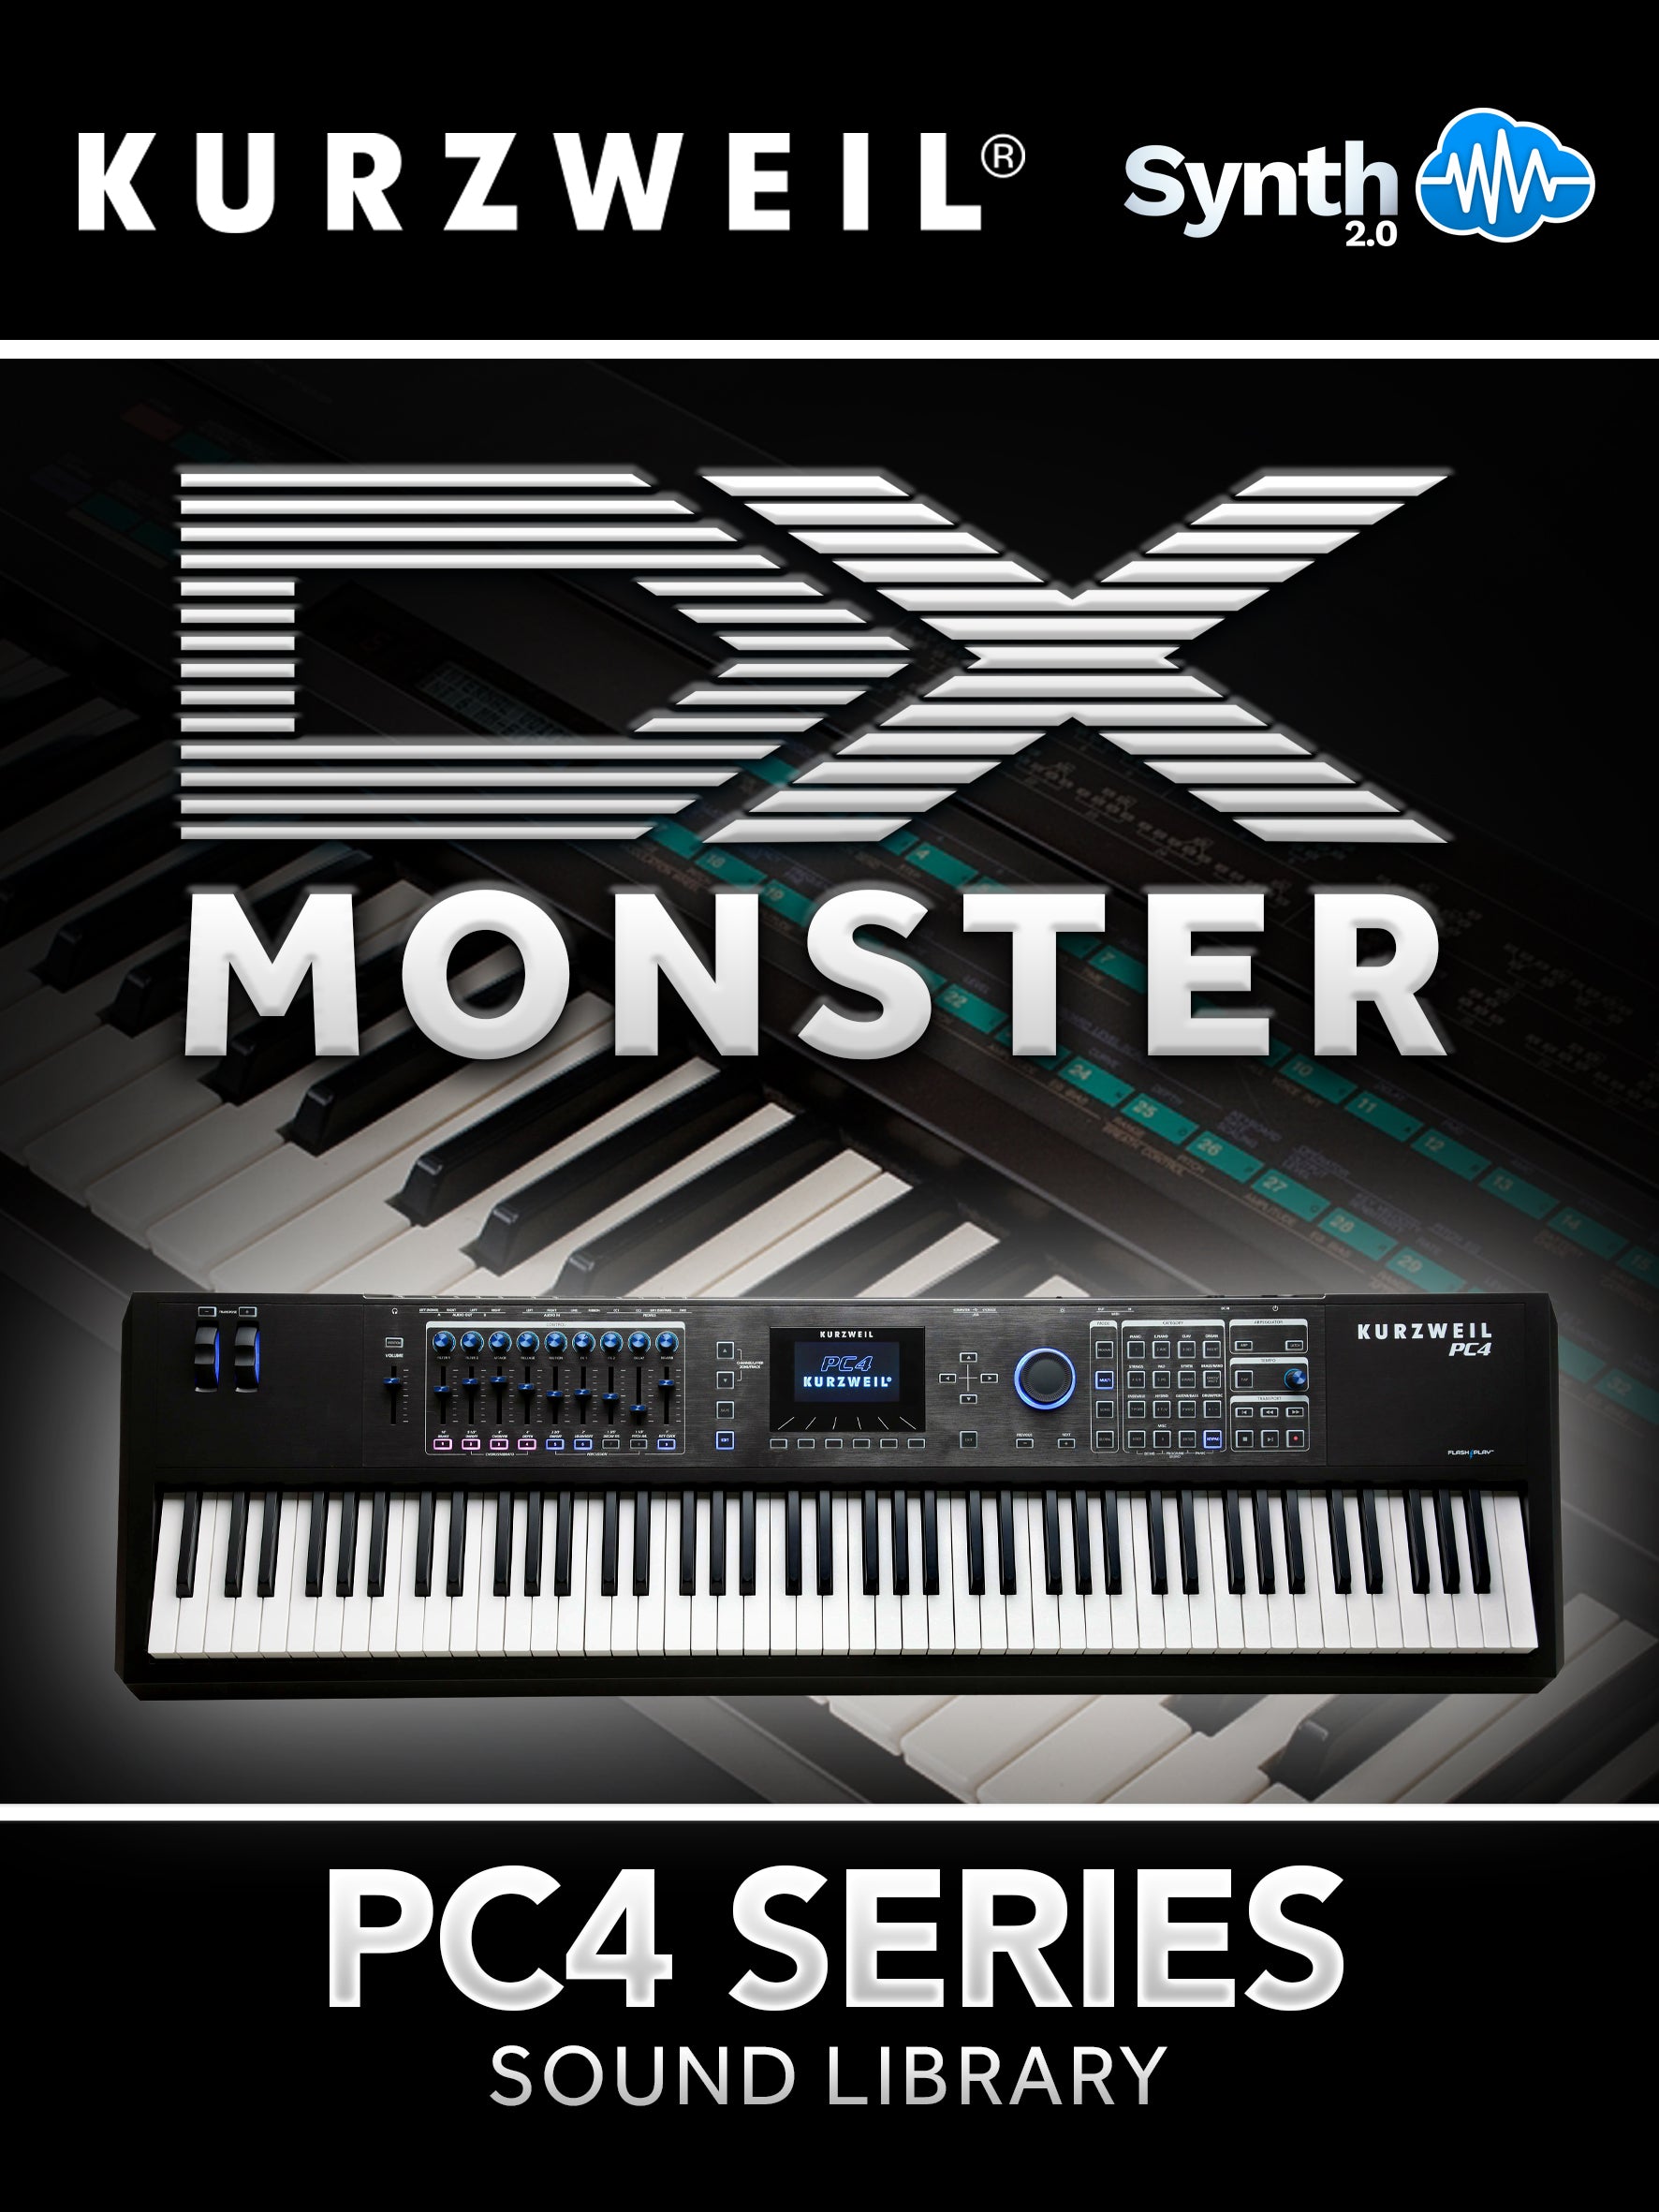 DRS037 - ( Bundle ) - DX Monster + Liquid Dream Pack - Kurzweil PC4 Series